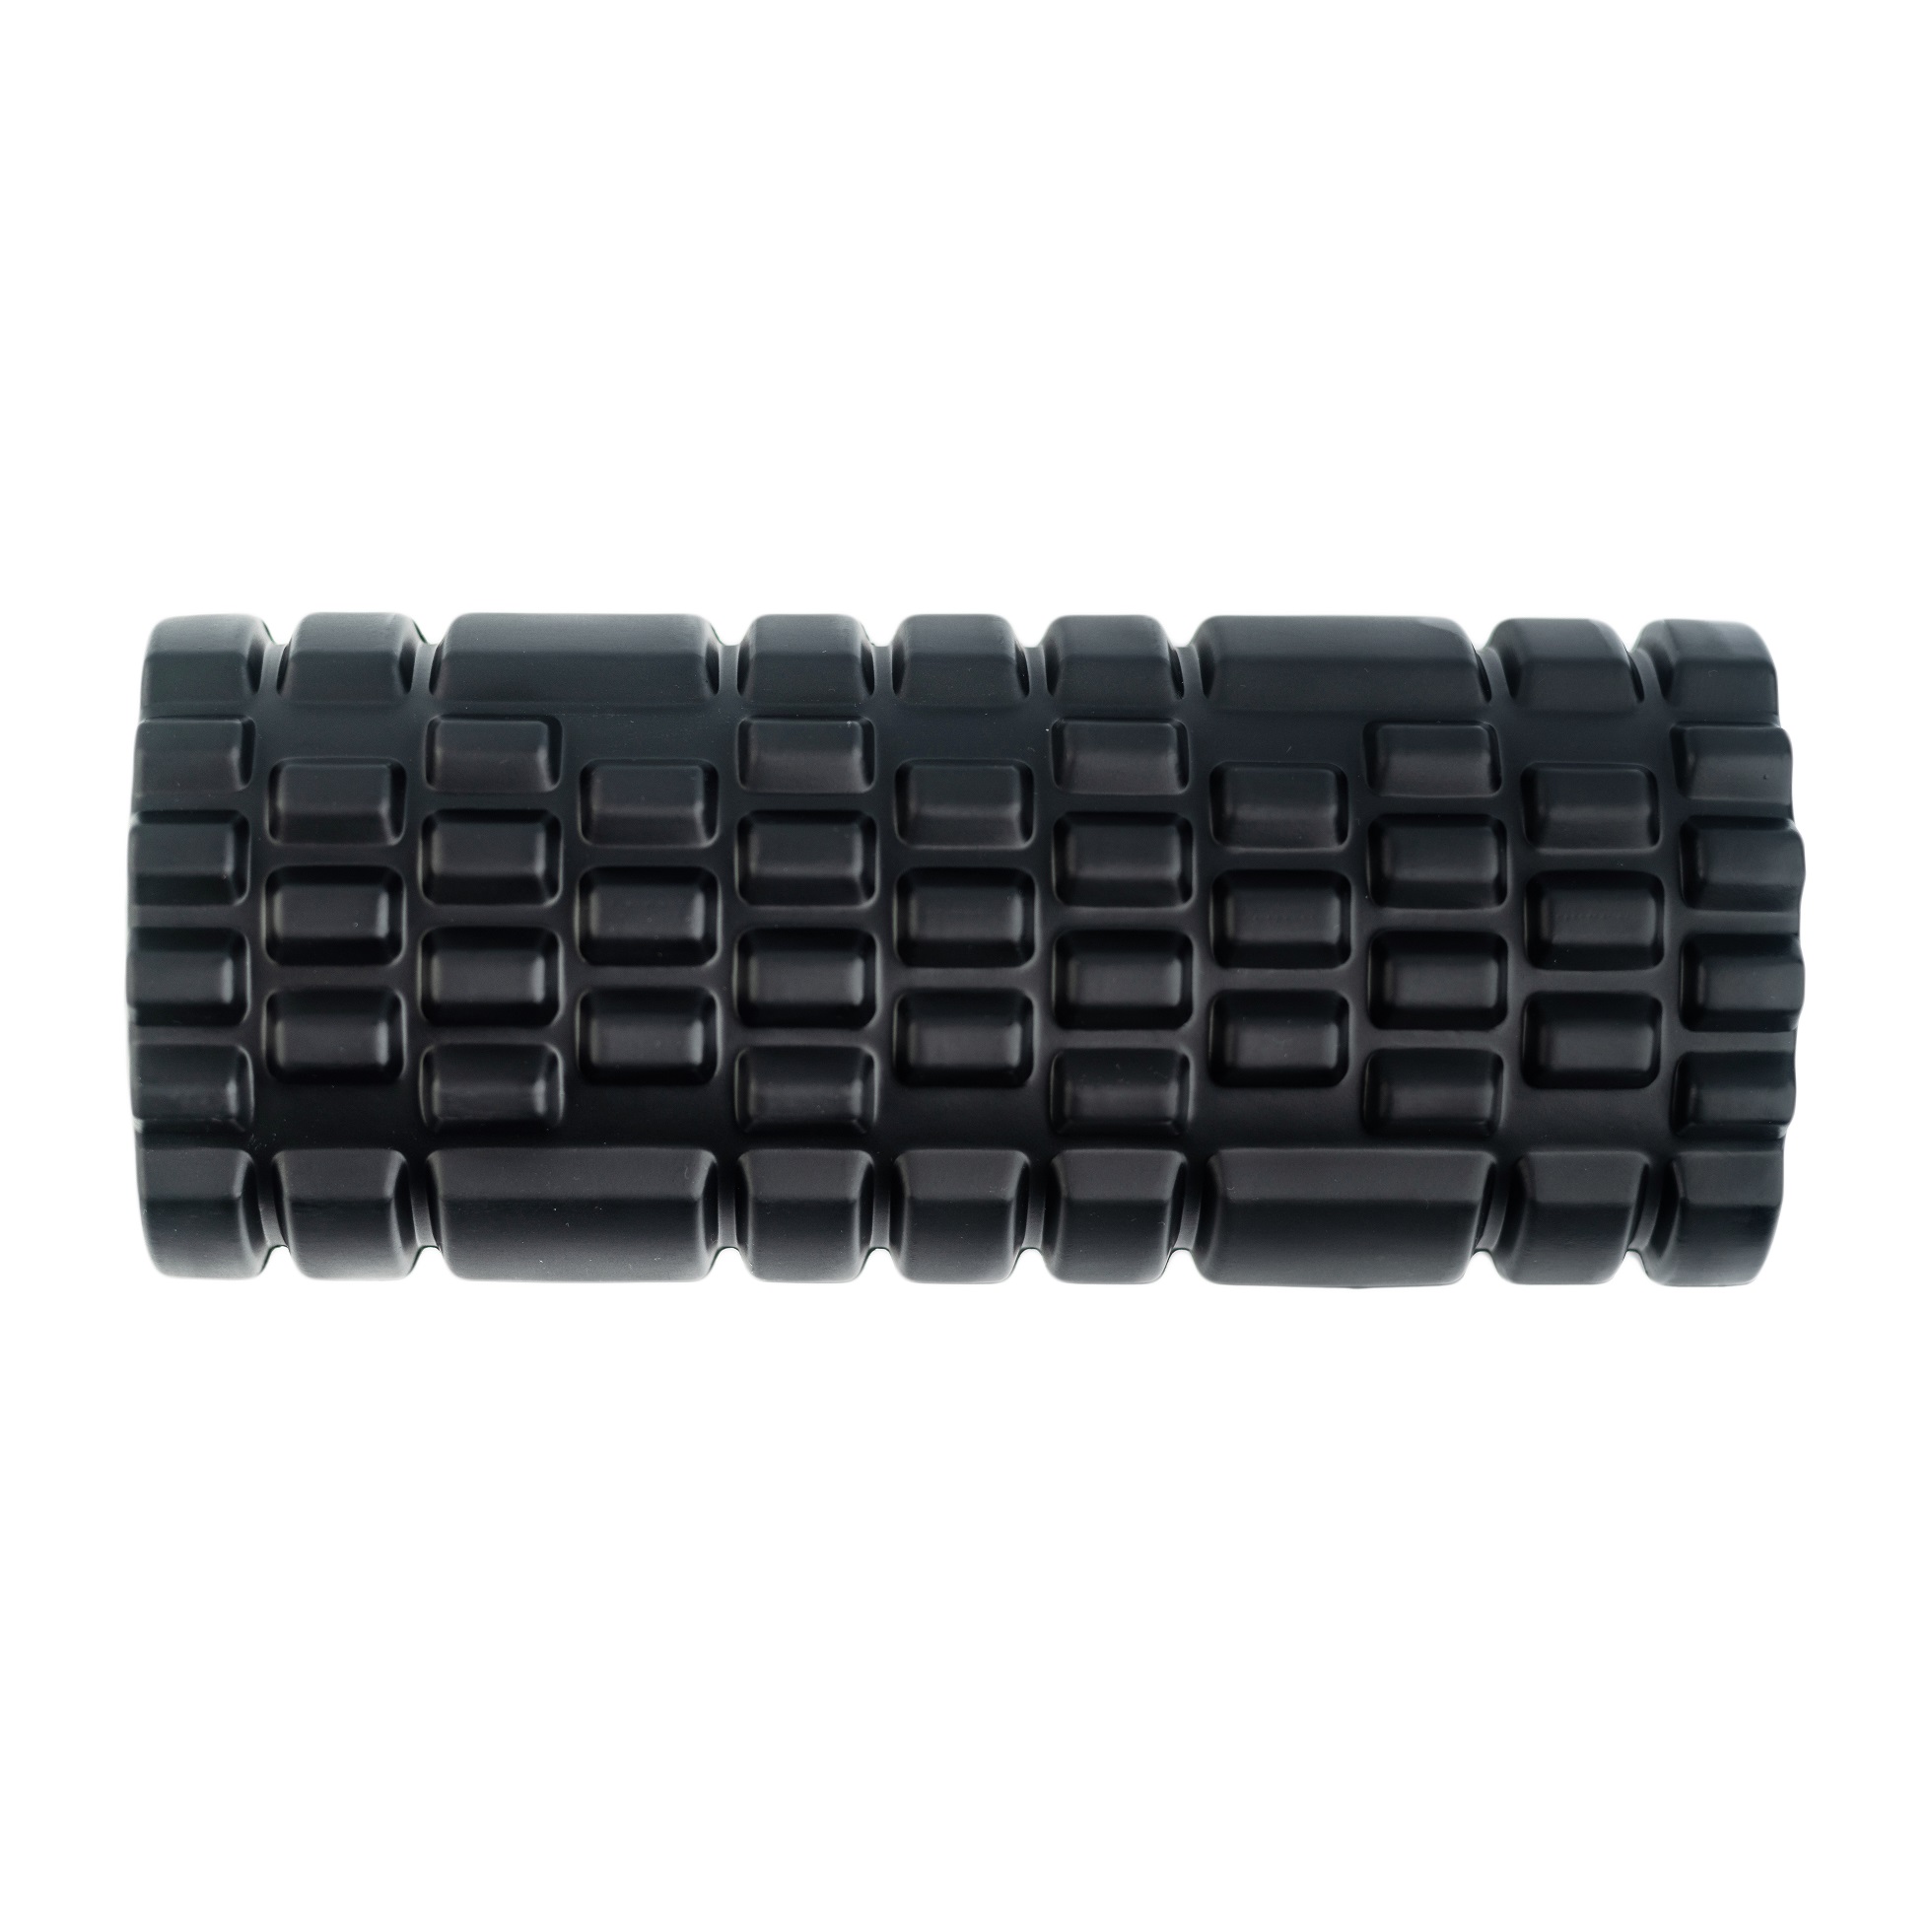 Grid foam roller